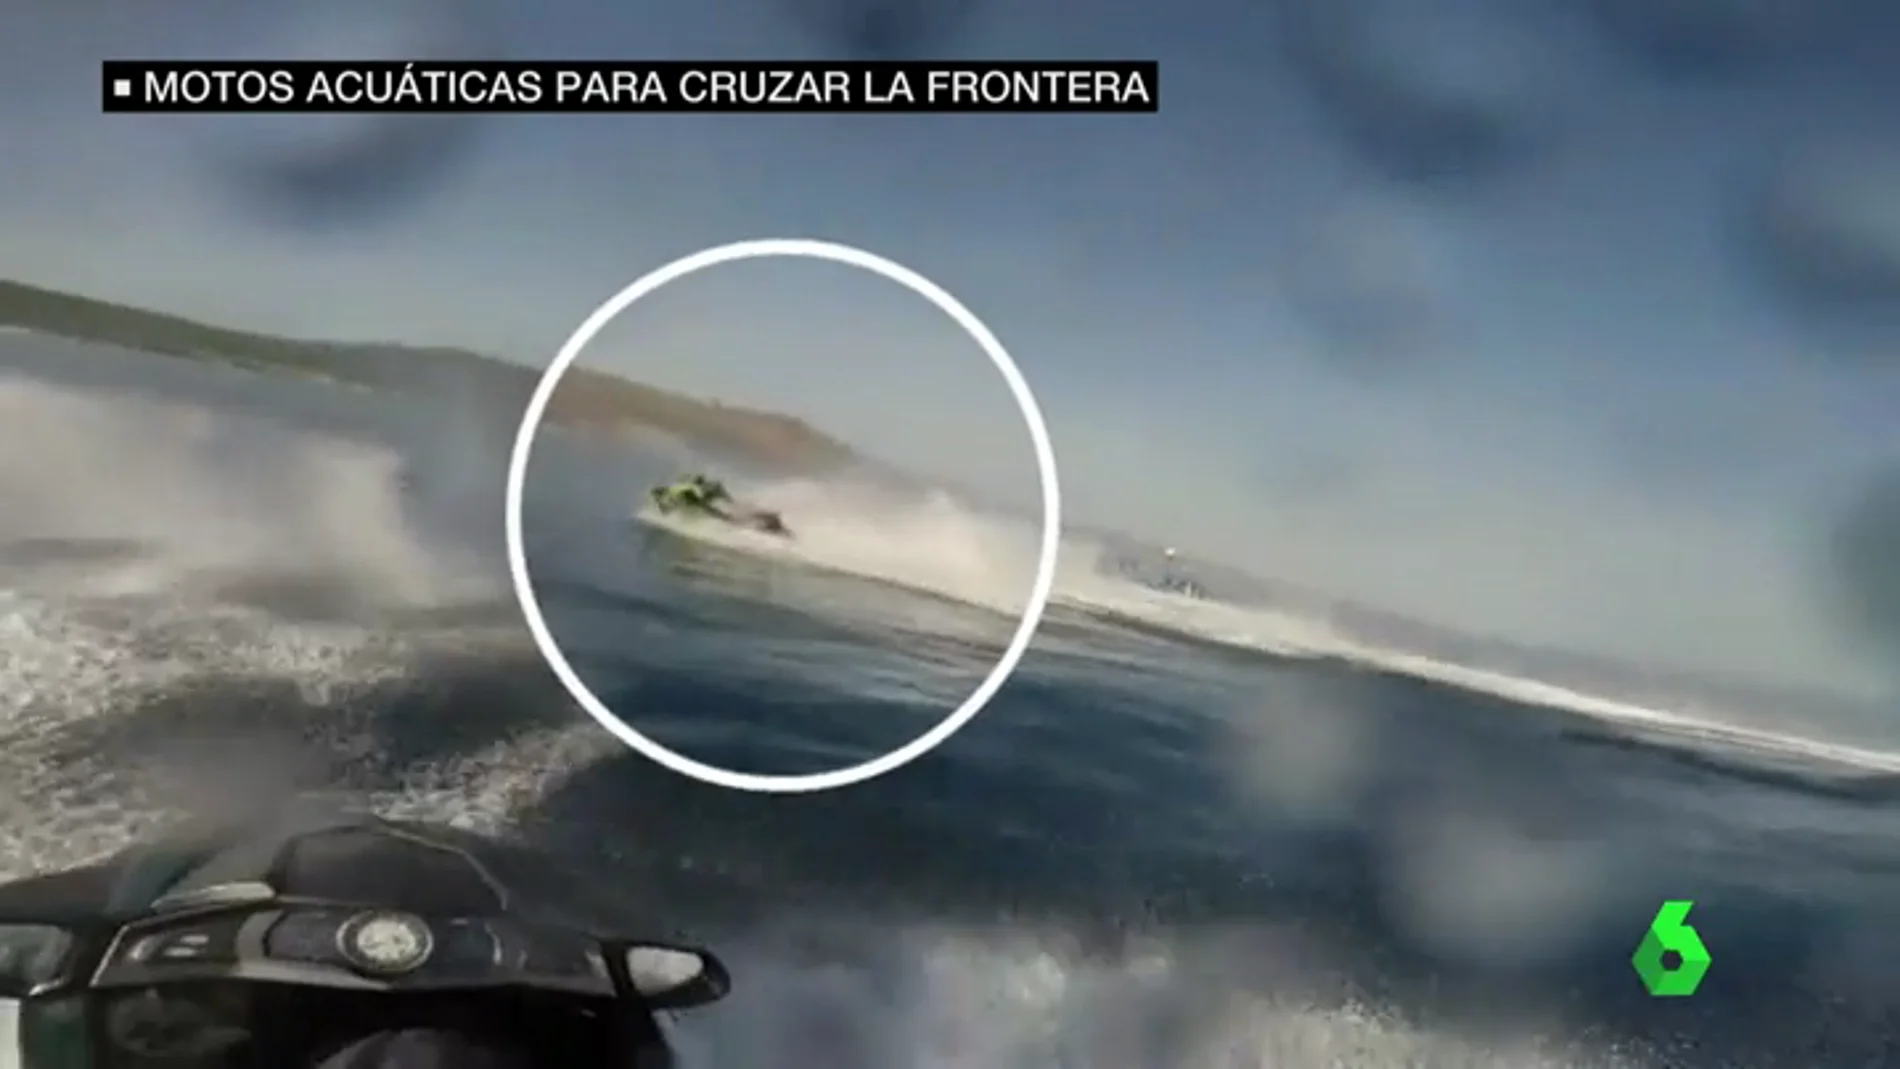 Motos acuáticas para cruzar inmigrantes por la frontera, un método cada vez más utilizado por las mafias